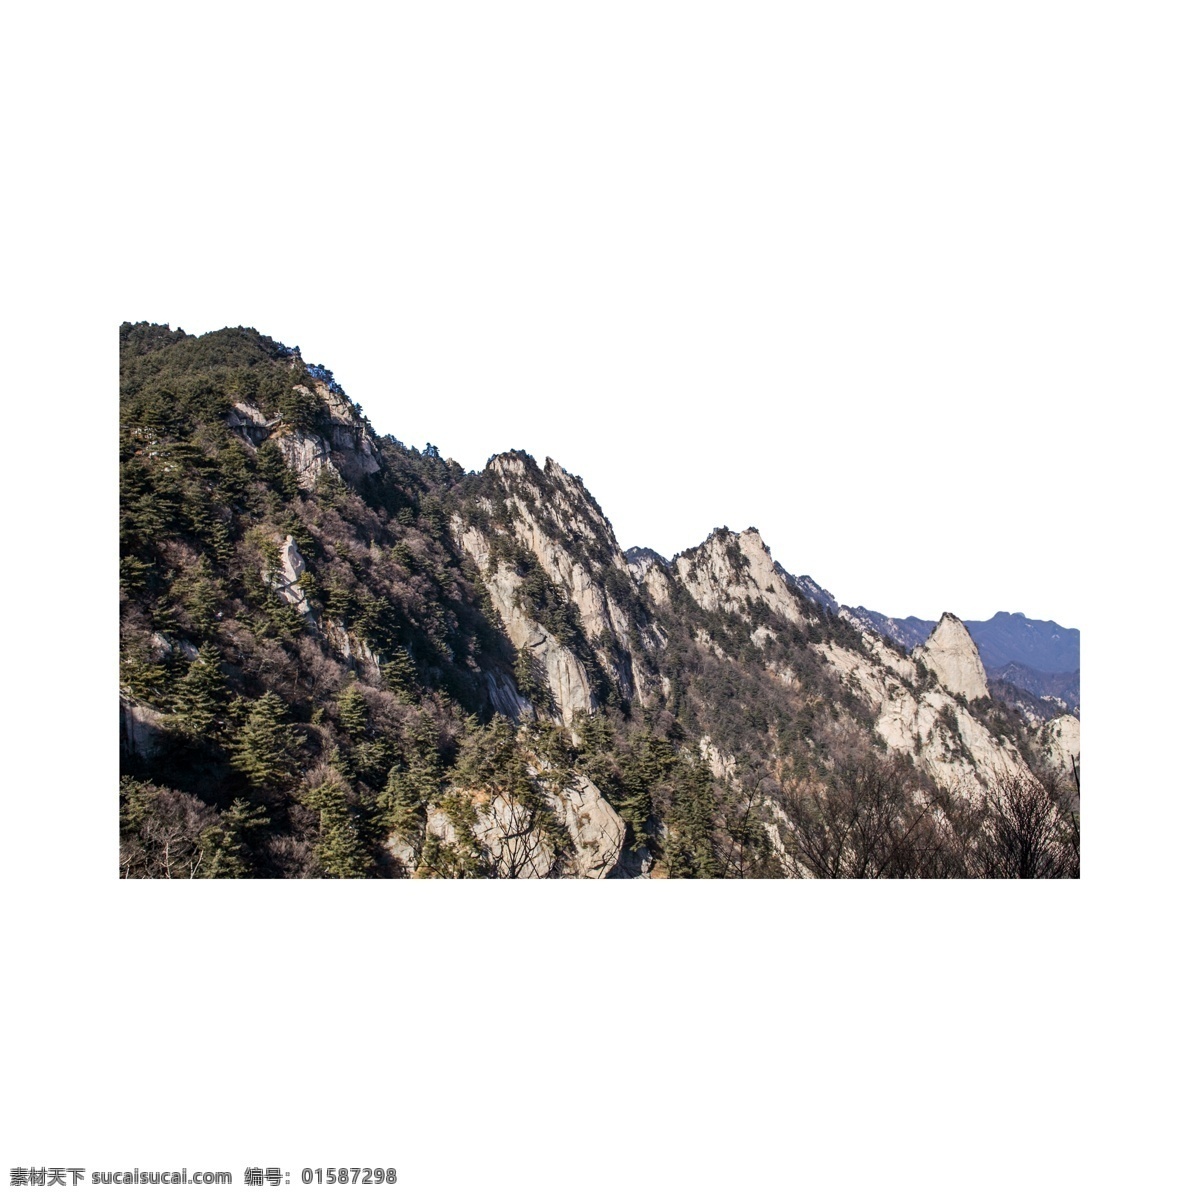 山峰 自然风光 实景 拍摄 免 抠 山 自然风貌 实景拍摄 山脉 大山 山景 游玩 大自然 树木 景观 岩石 山崖